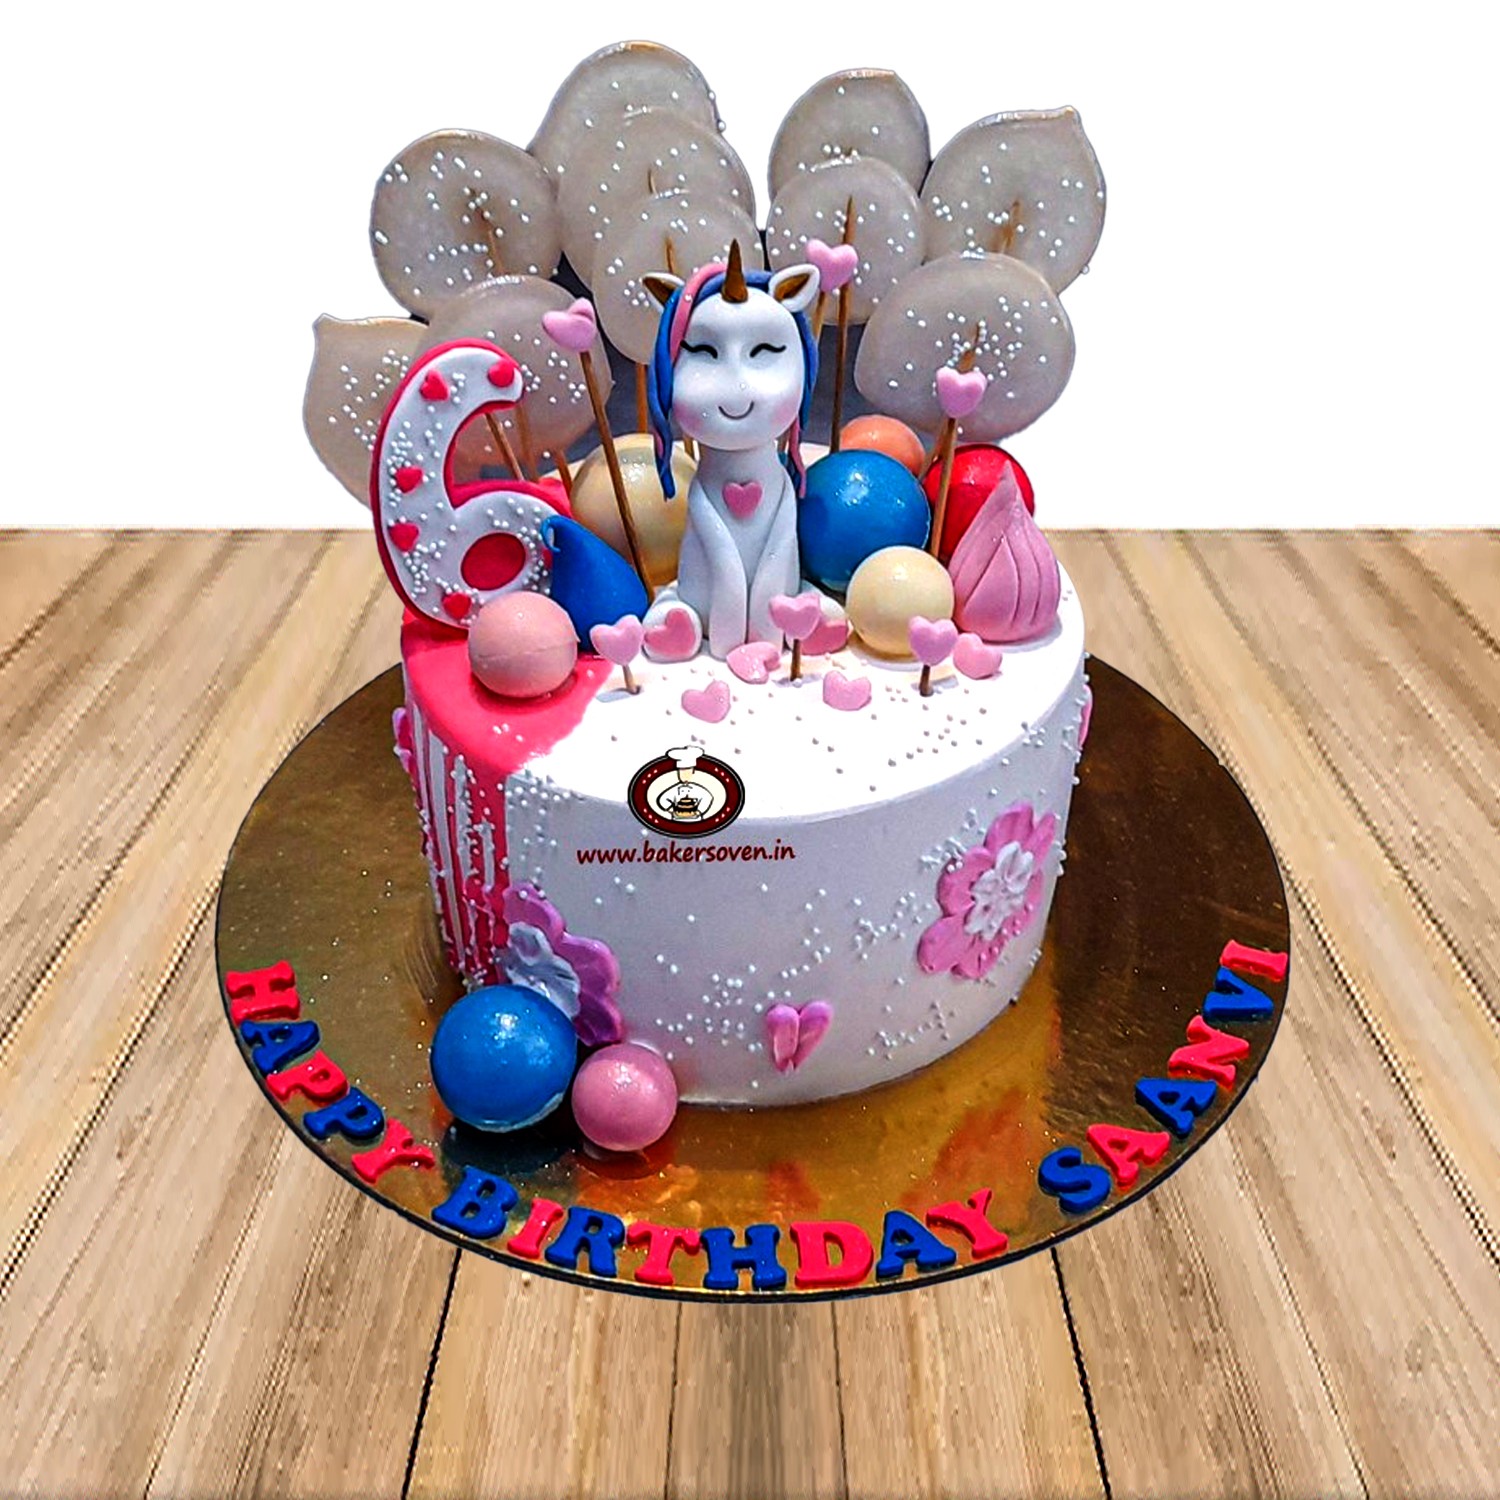 Unicorn Magic - Decorated Cake by Tiffany DuMoulin - CakesDecor